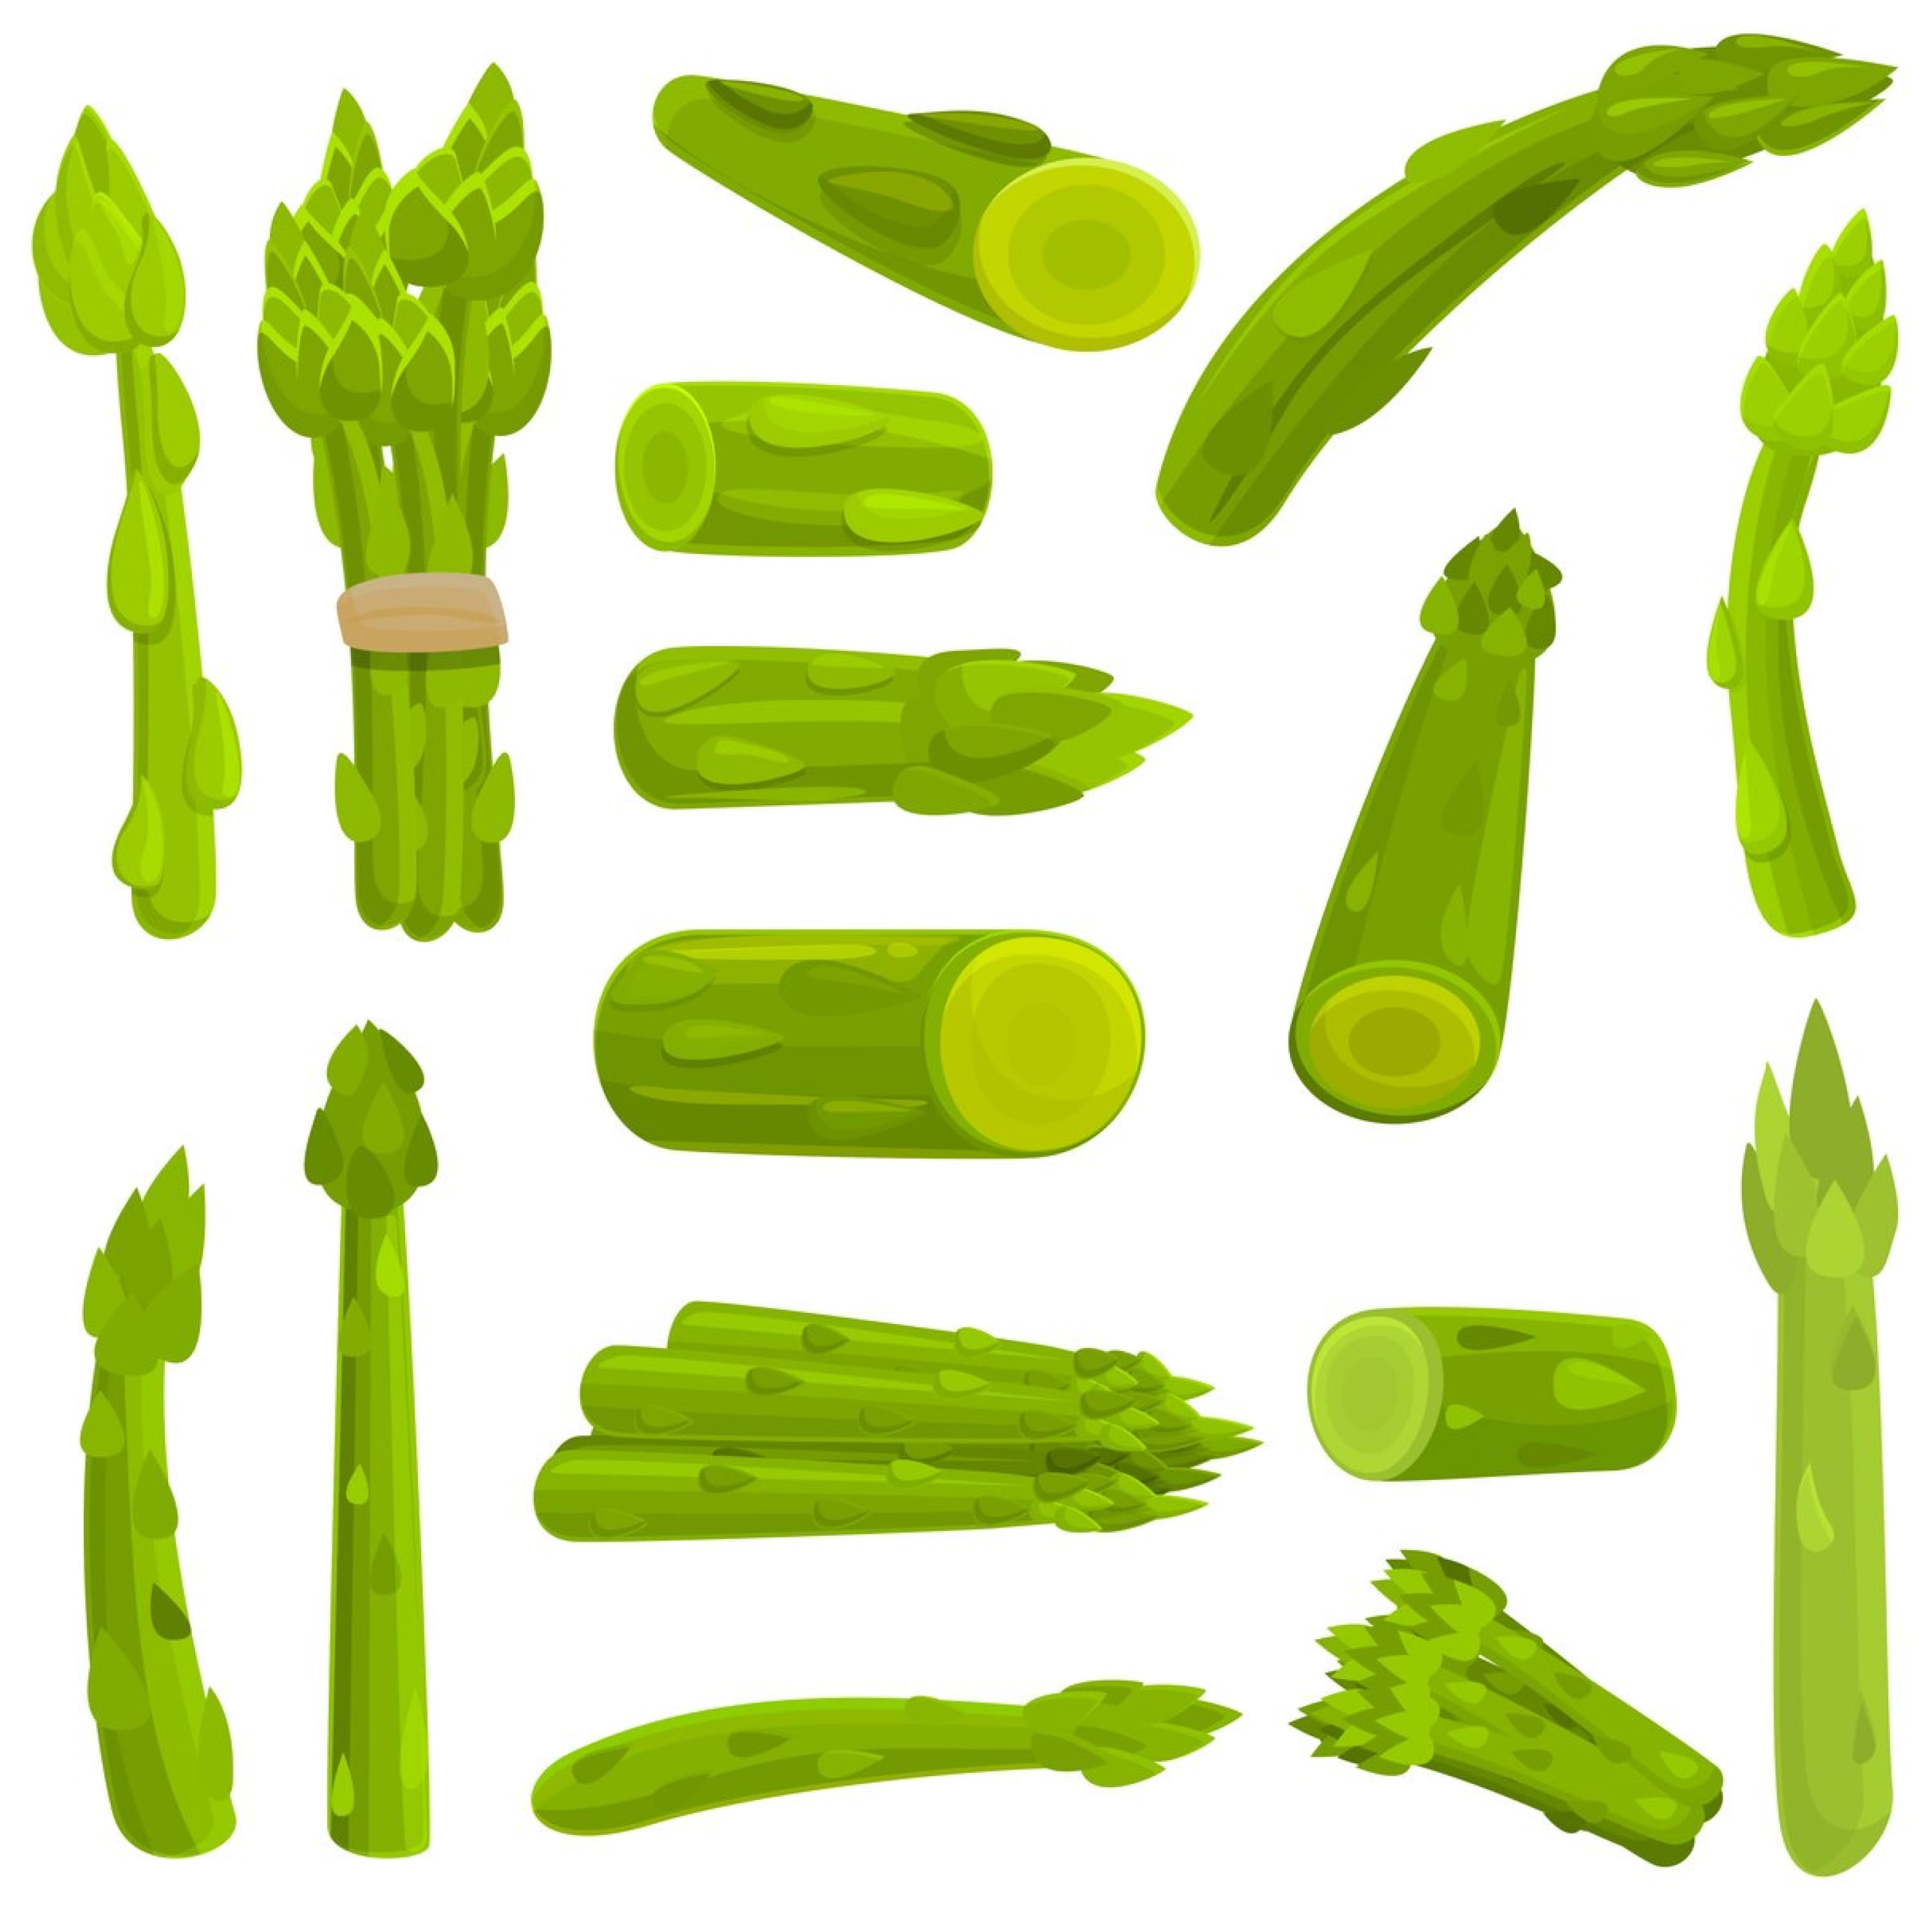 Asparagus icons set, cartoon style cover.